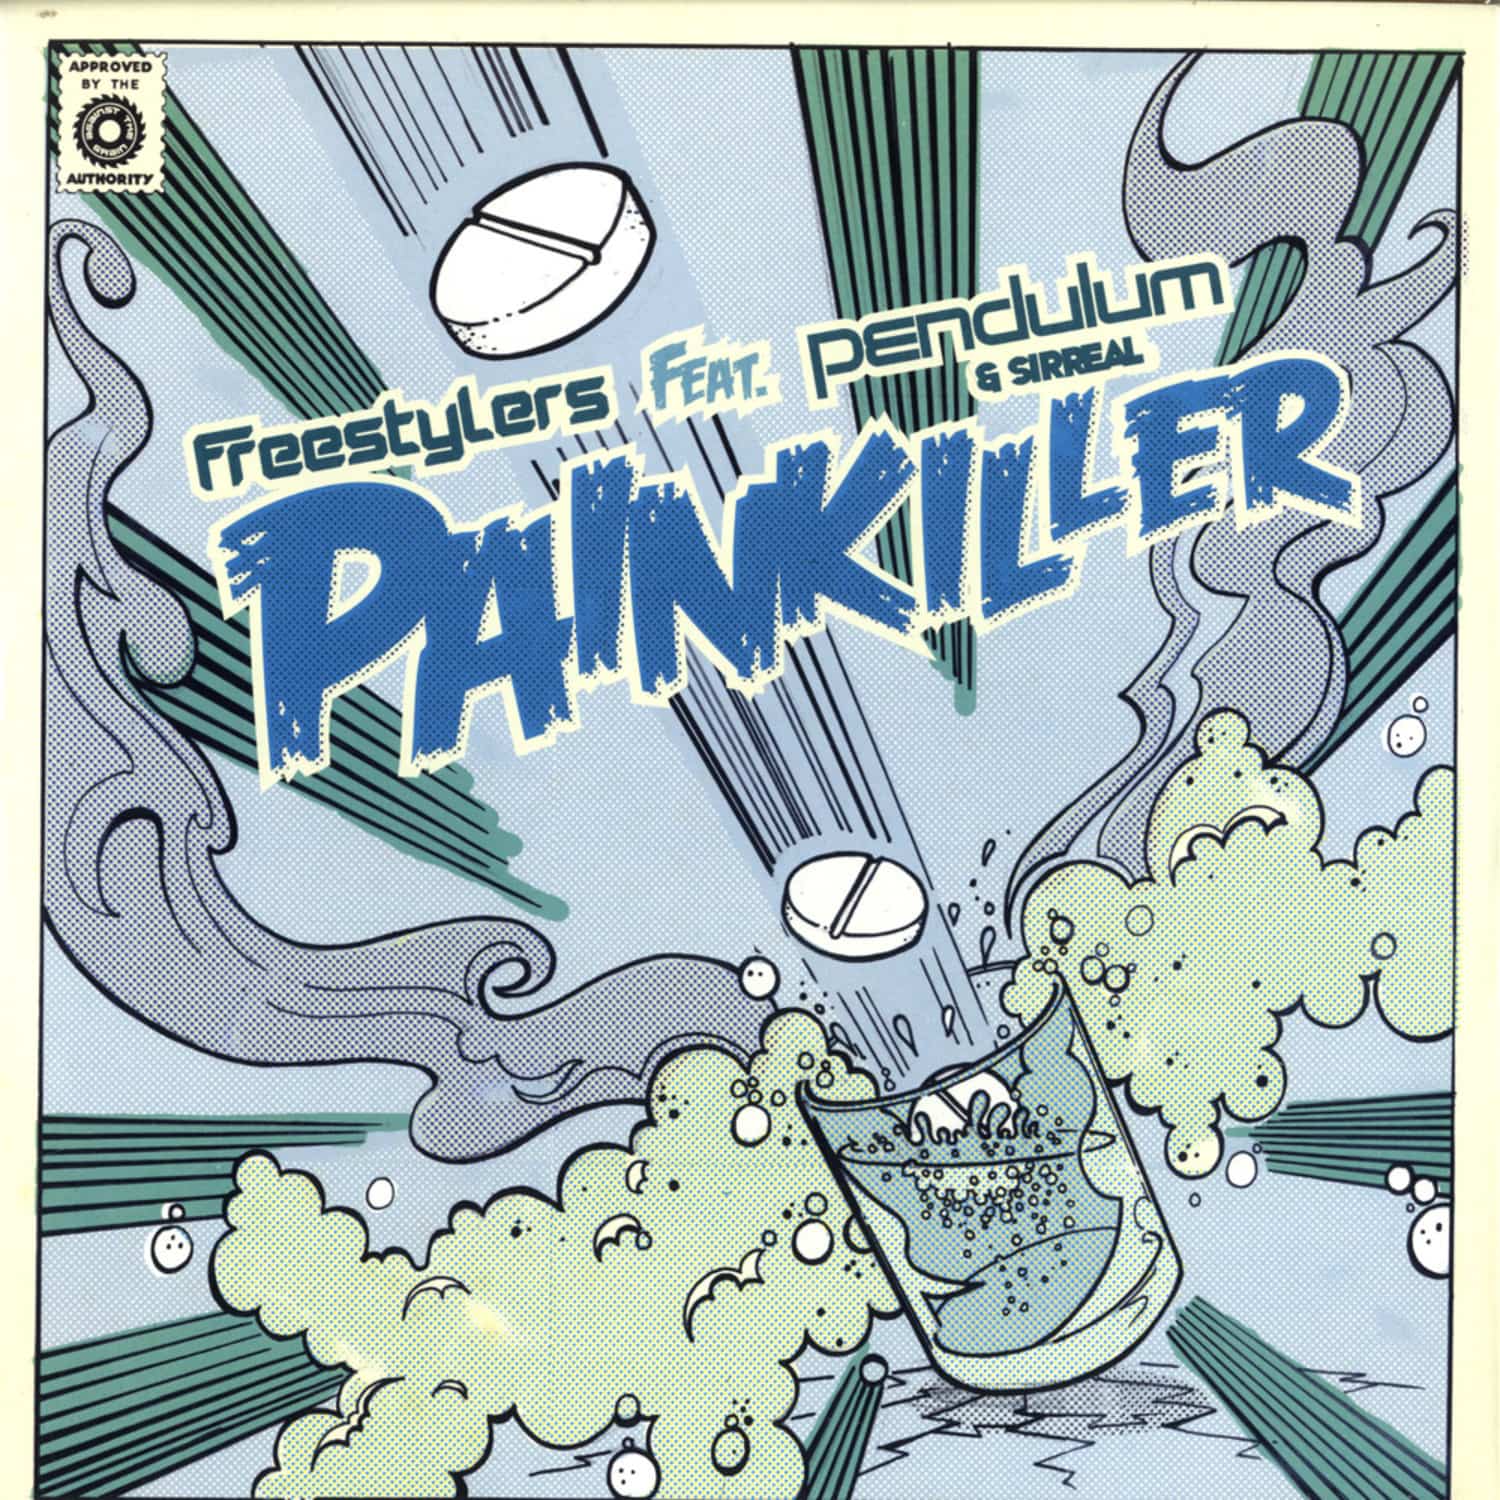 Freestylers feat. Pendulum - PAINKILLER